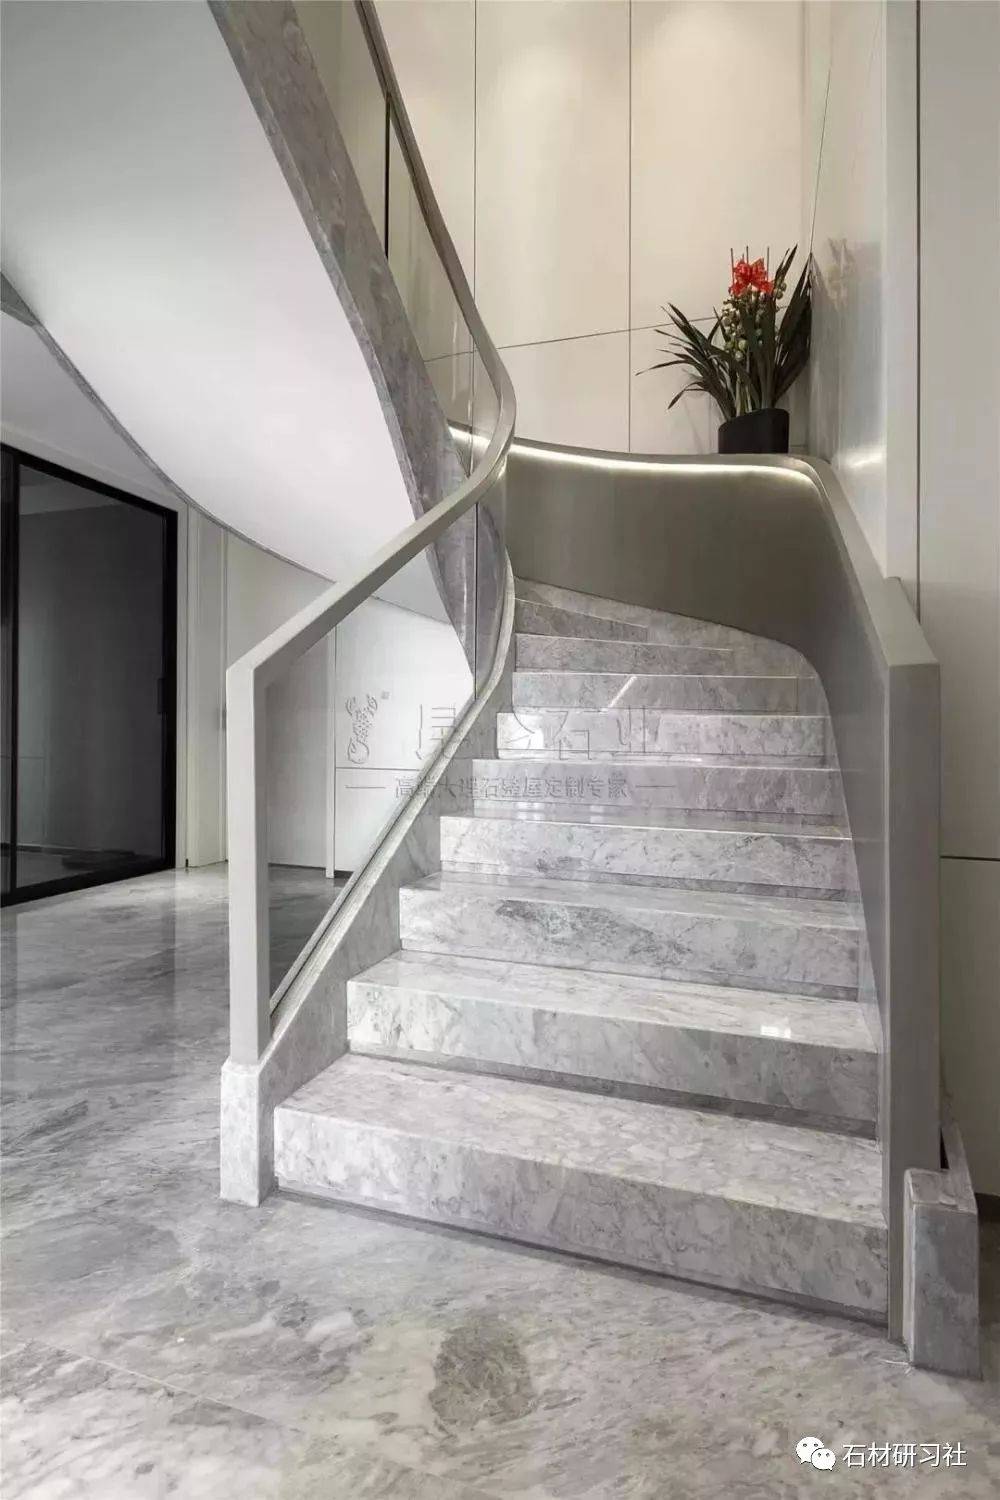 " 高级灰具有很强的装饰性  用灰色大理石对楼梯进行装修  其装饰效果